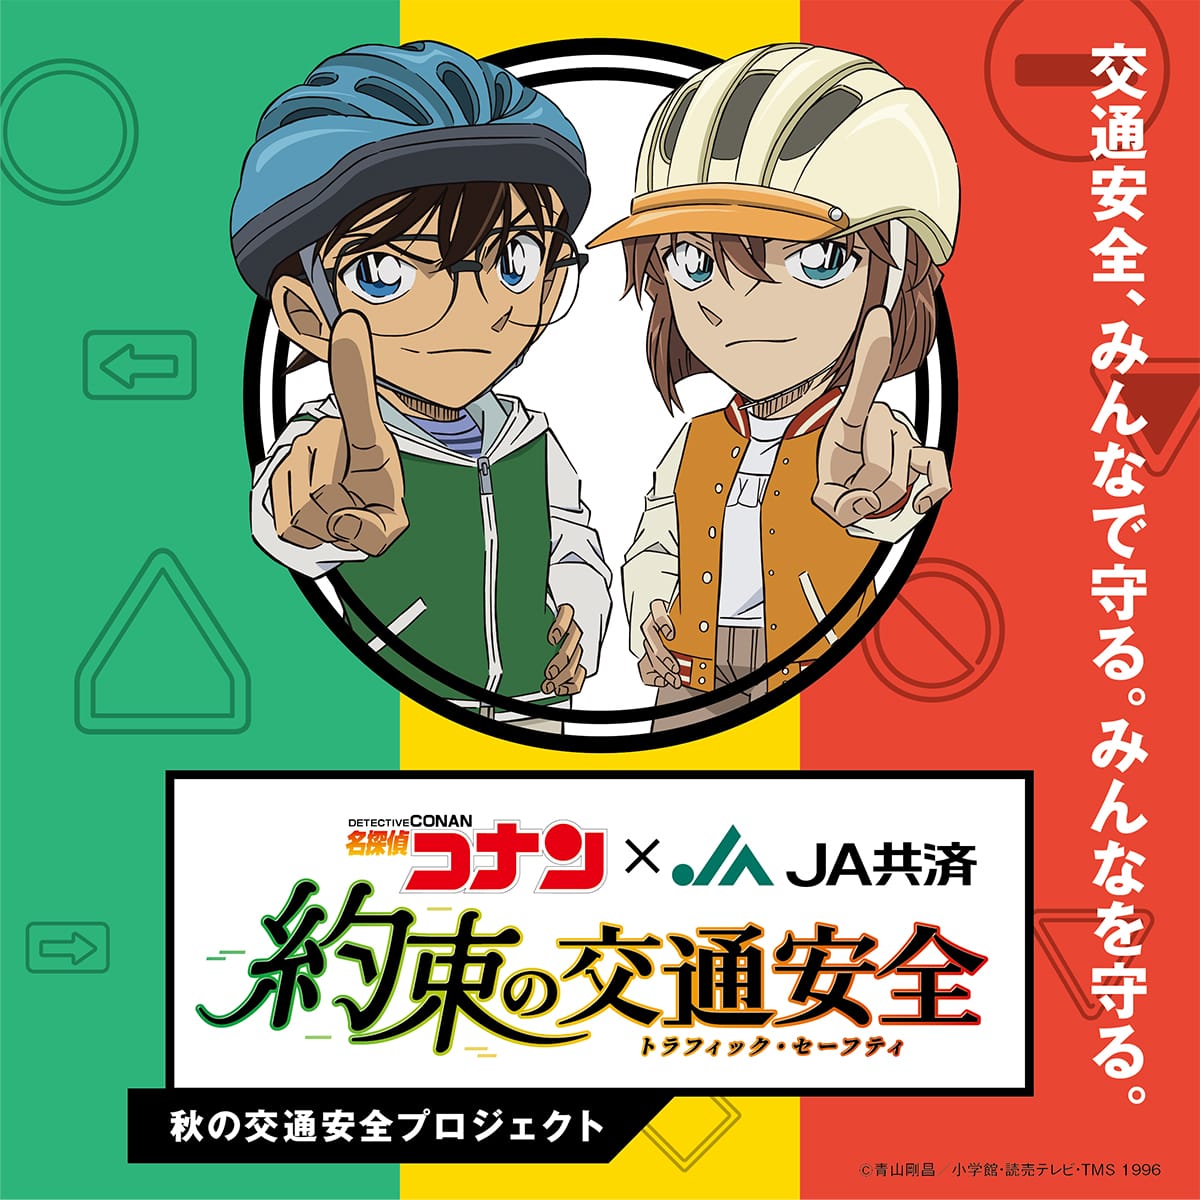 名探偵コナン × JA共済 秋の交通安全プロジェクト 9月15日よりスタート!